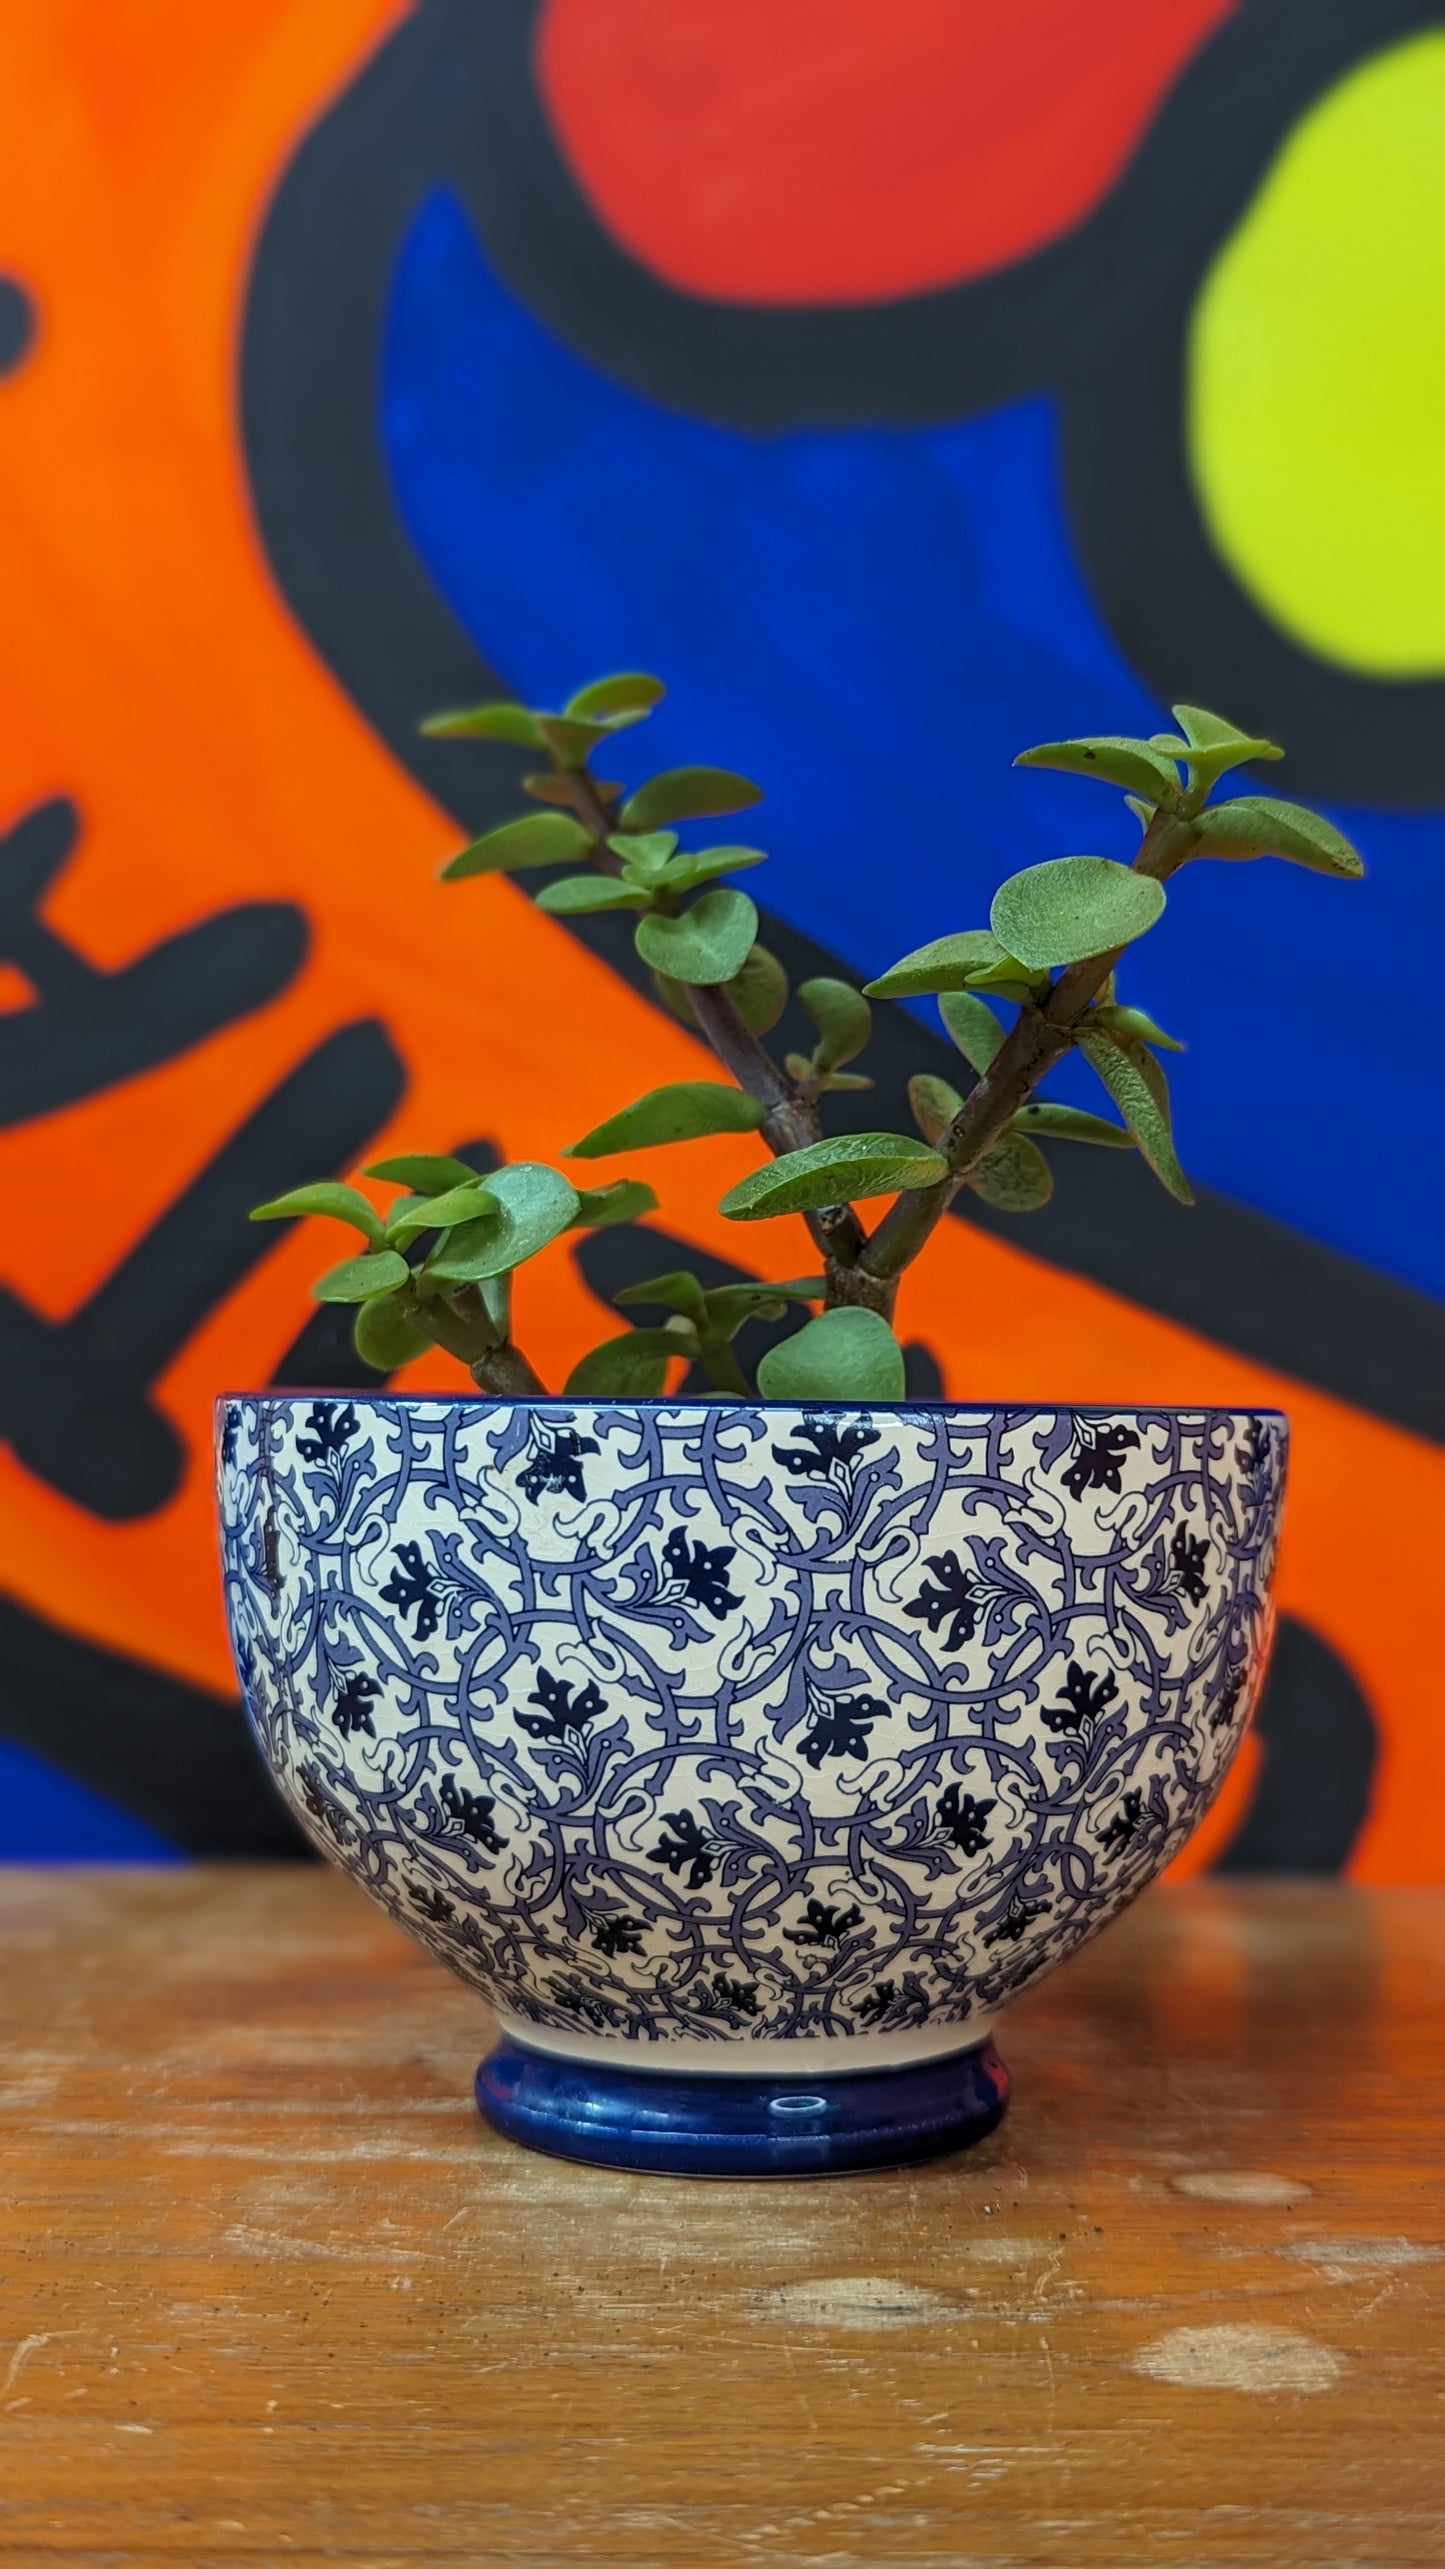 Vintge ceramic bowl